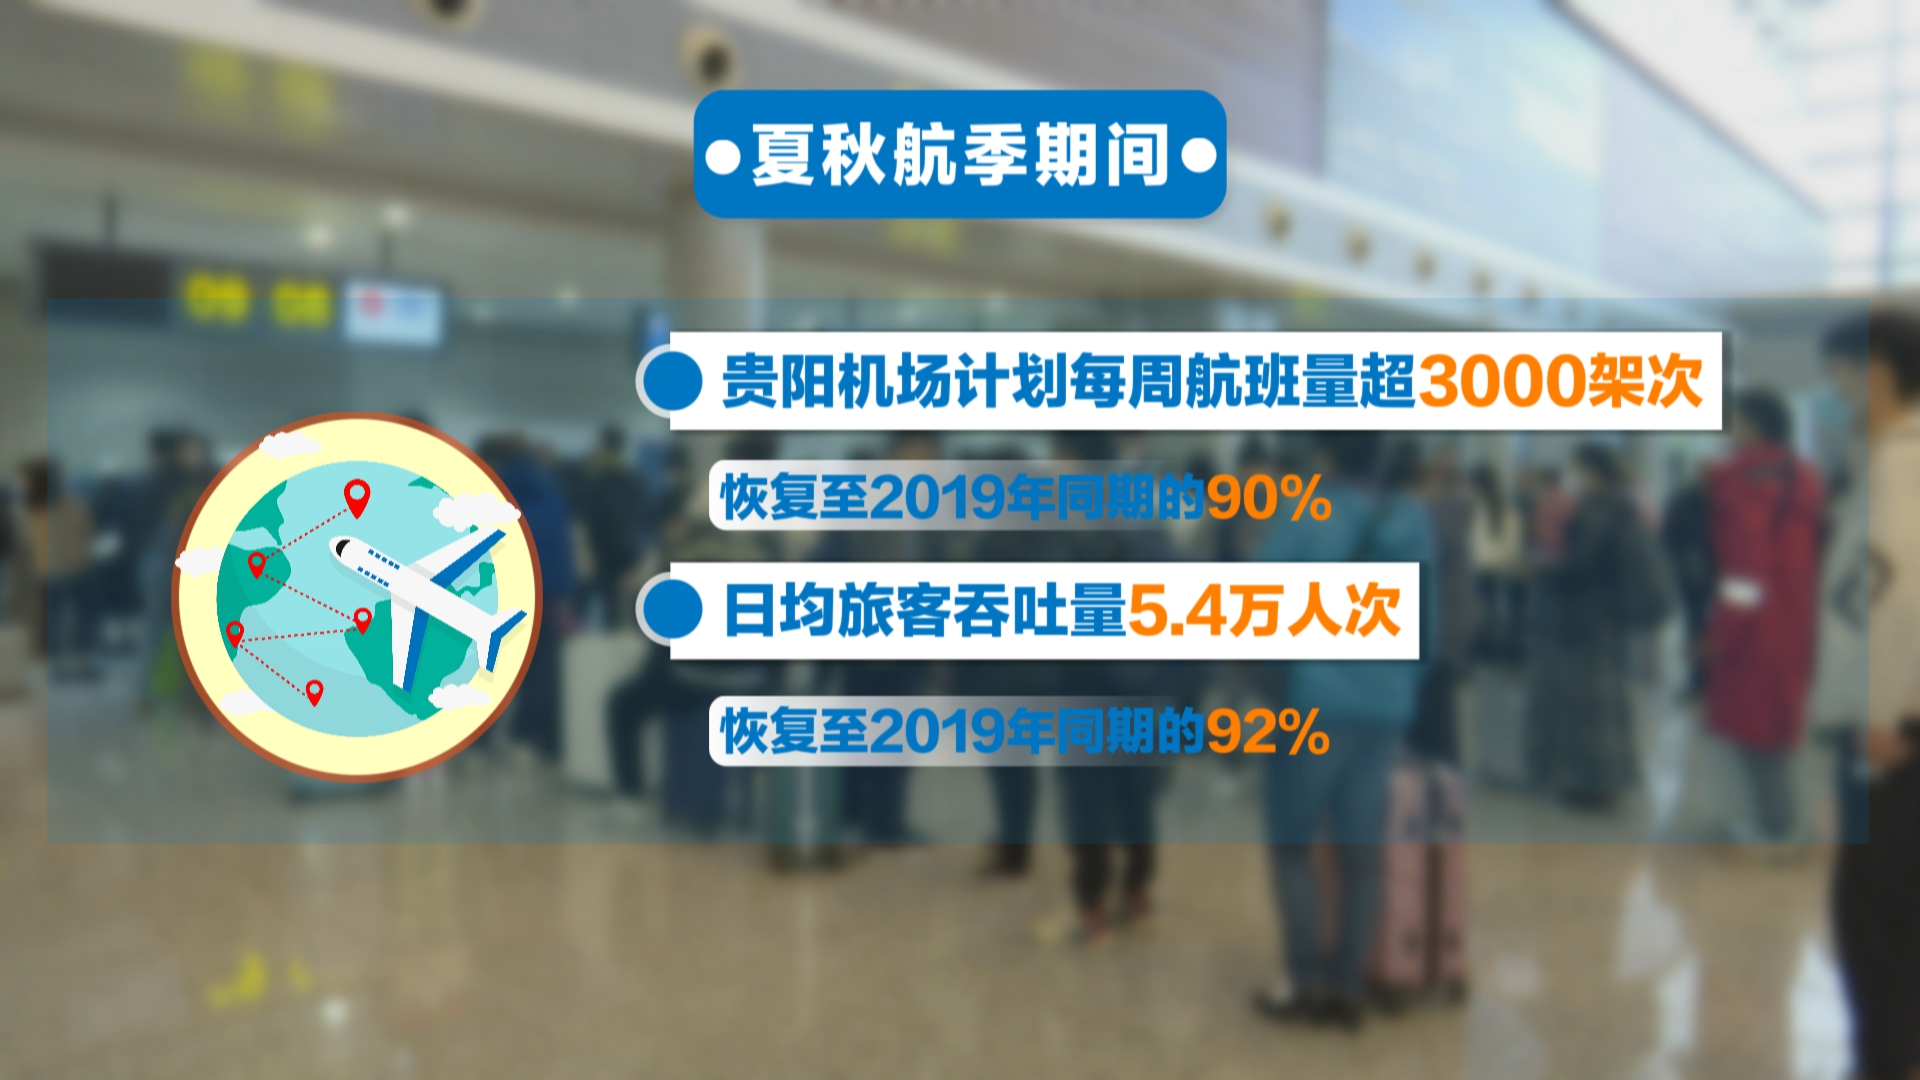 贵州新闻联播丨贵阳龙洞堡国际机场今天执行夏秋航班计划 周航班量超3000架次